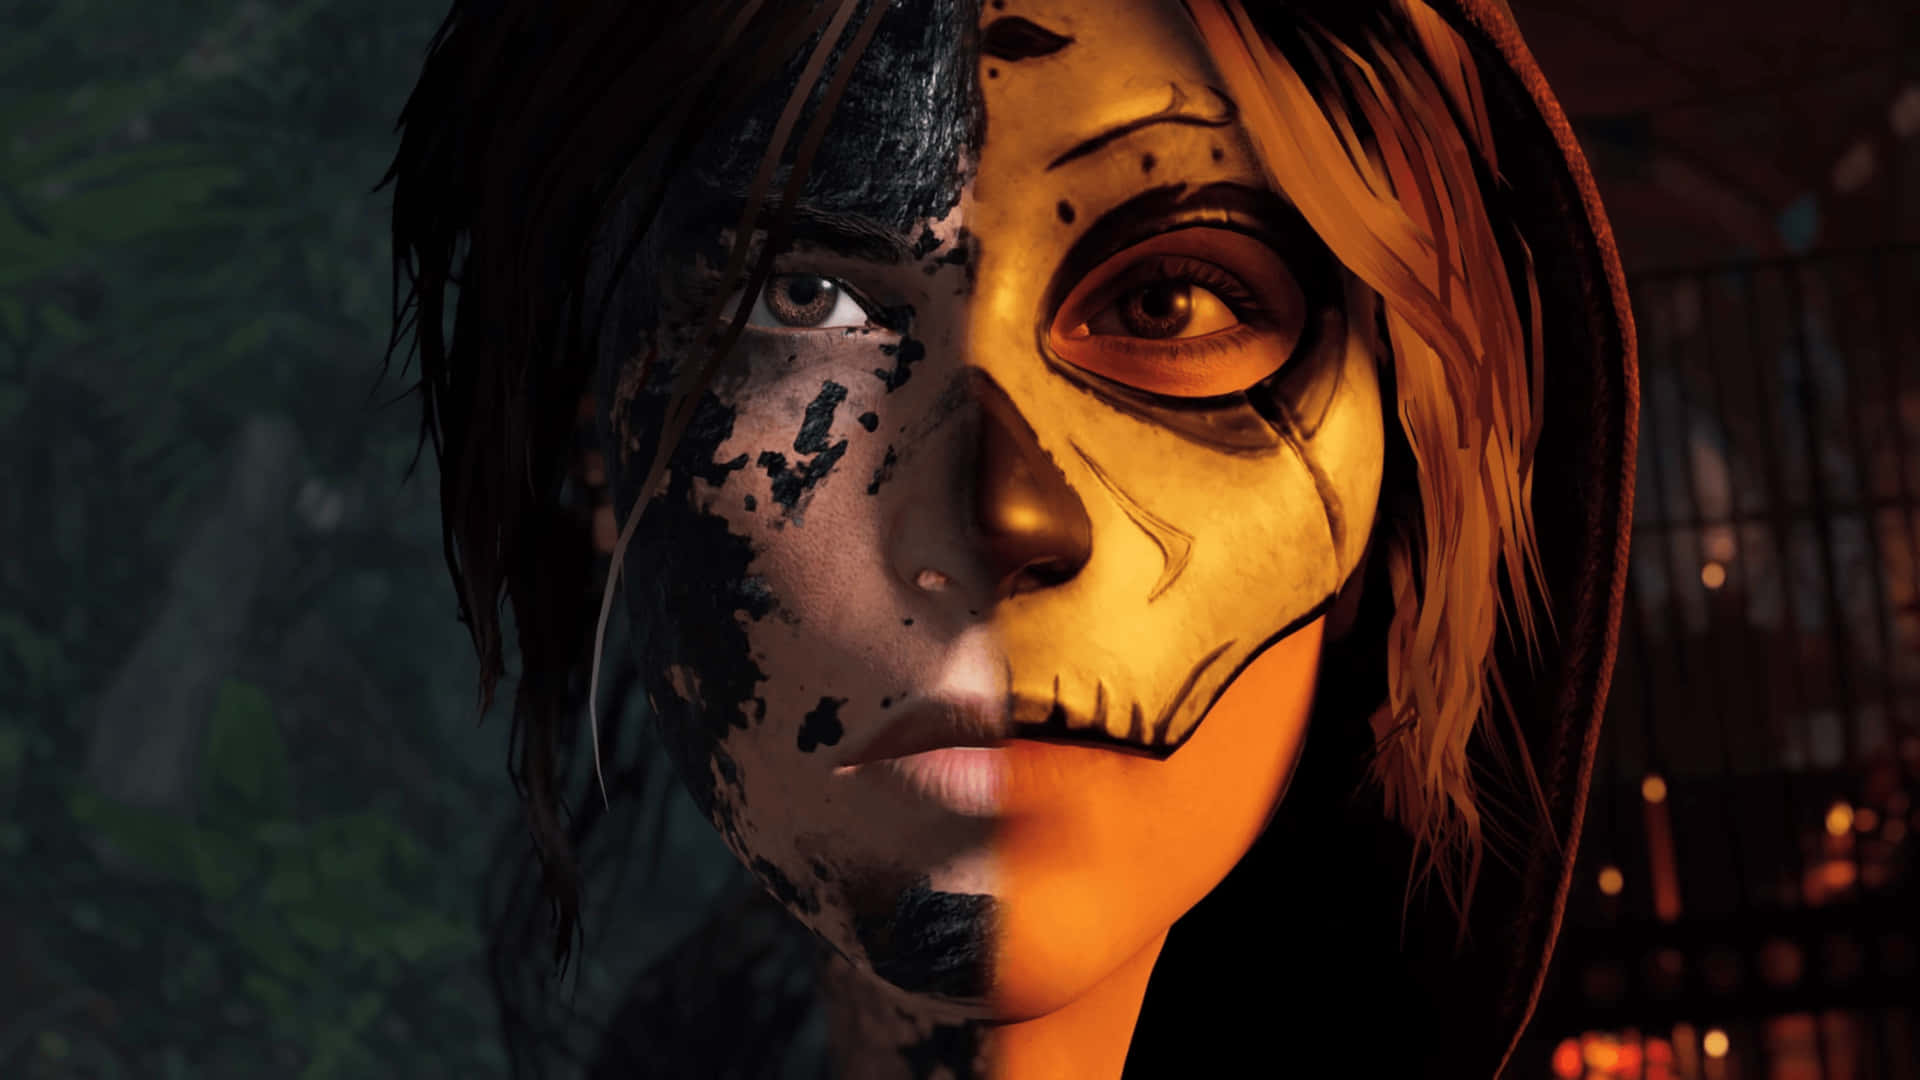 Ännuen Gång Tar Den Modiga Lara Croft Sig An Ett Episkt Tomb Raider-äventyr.